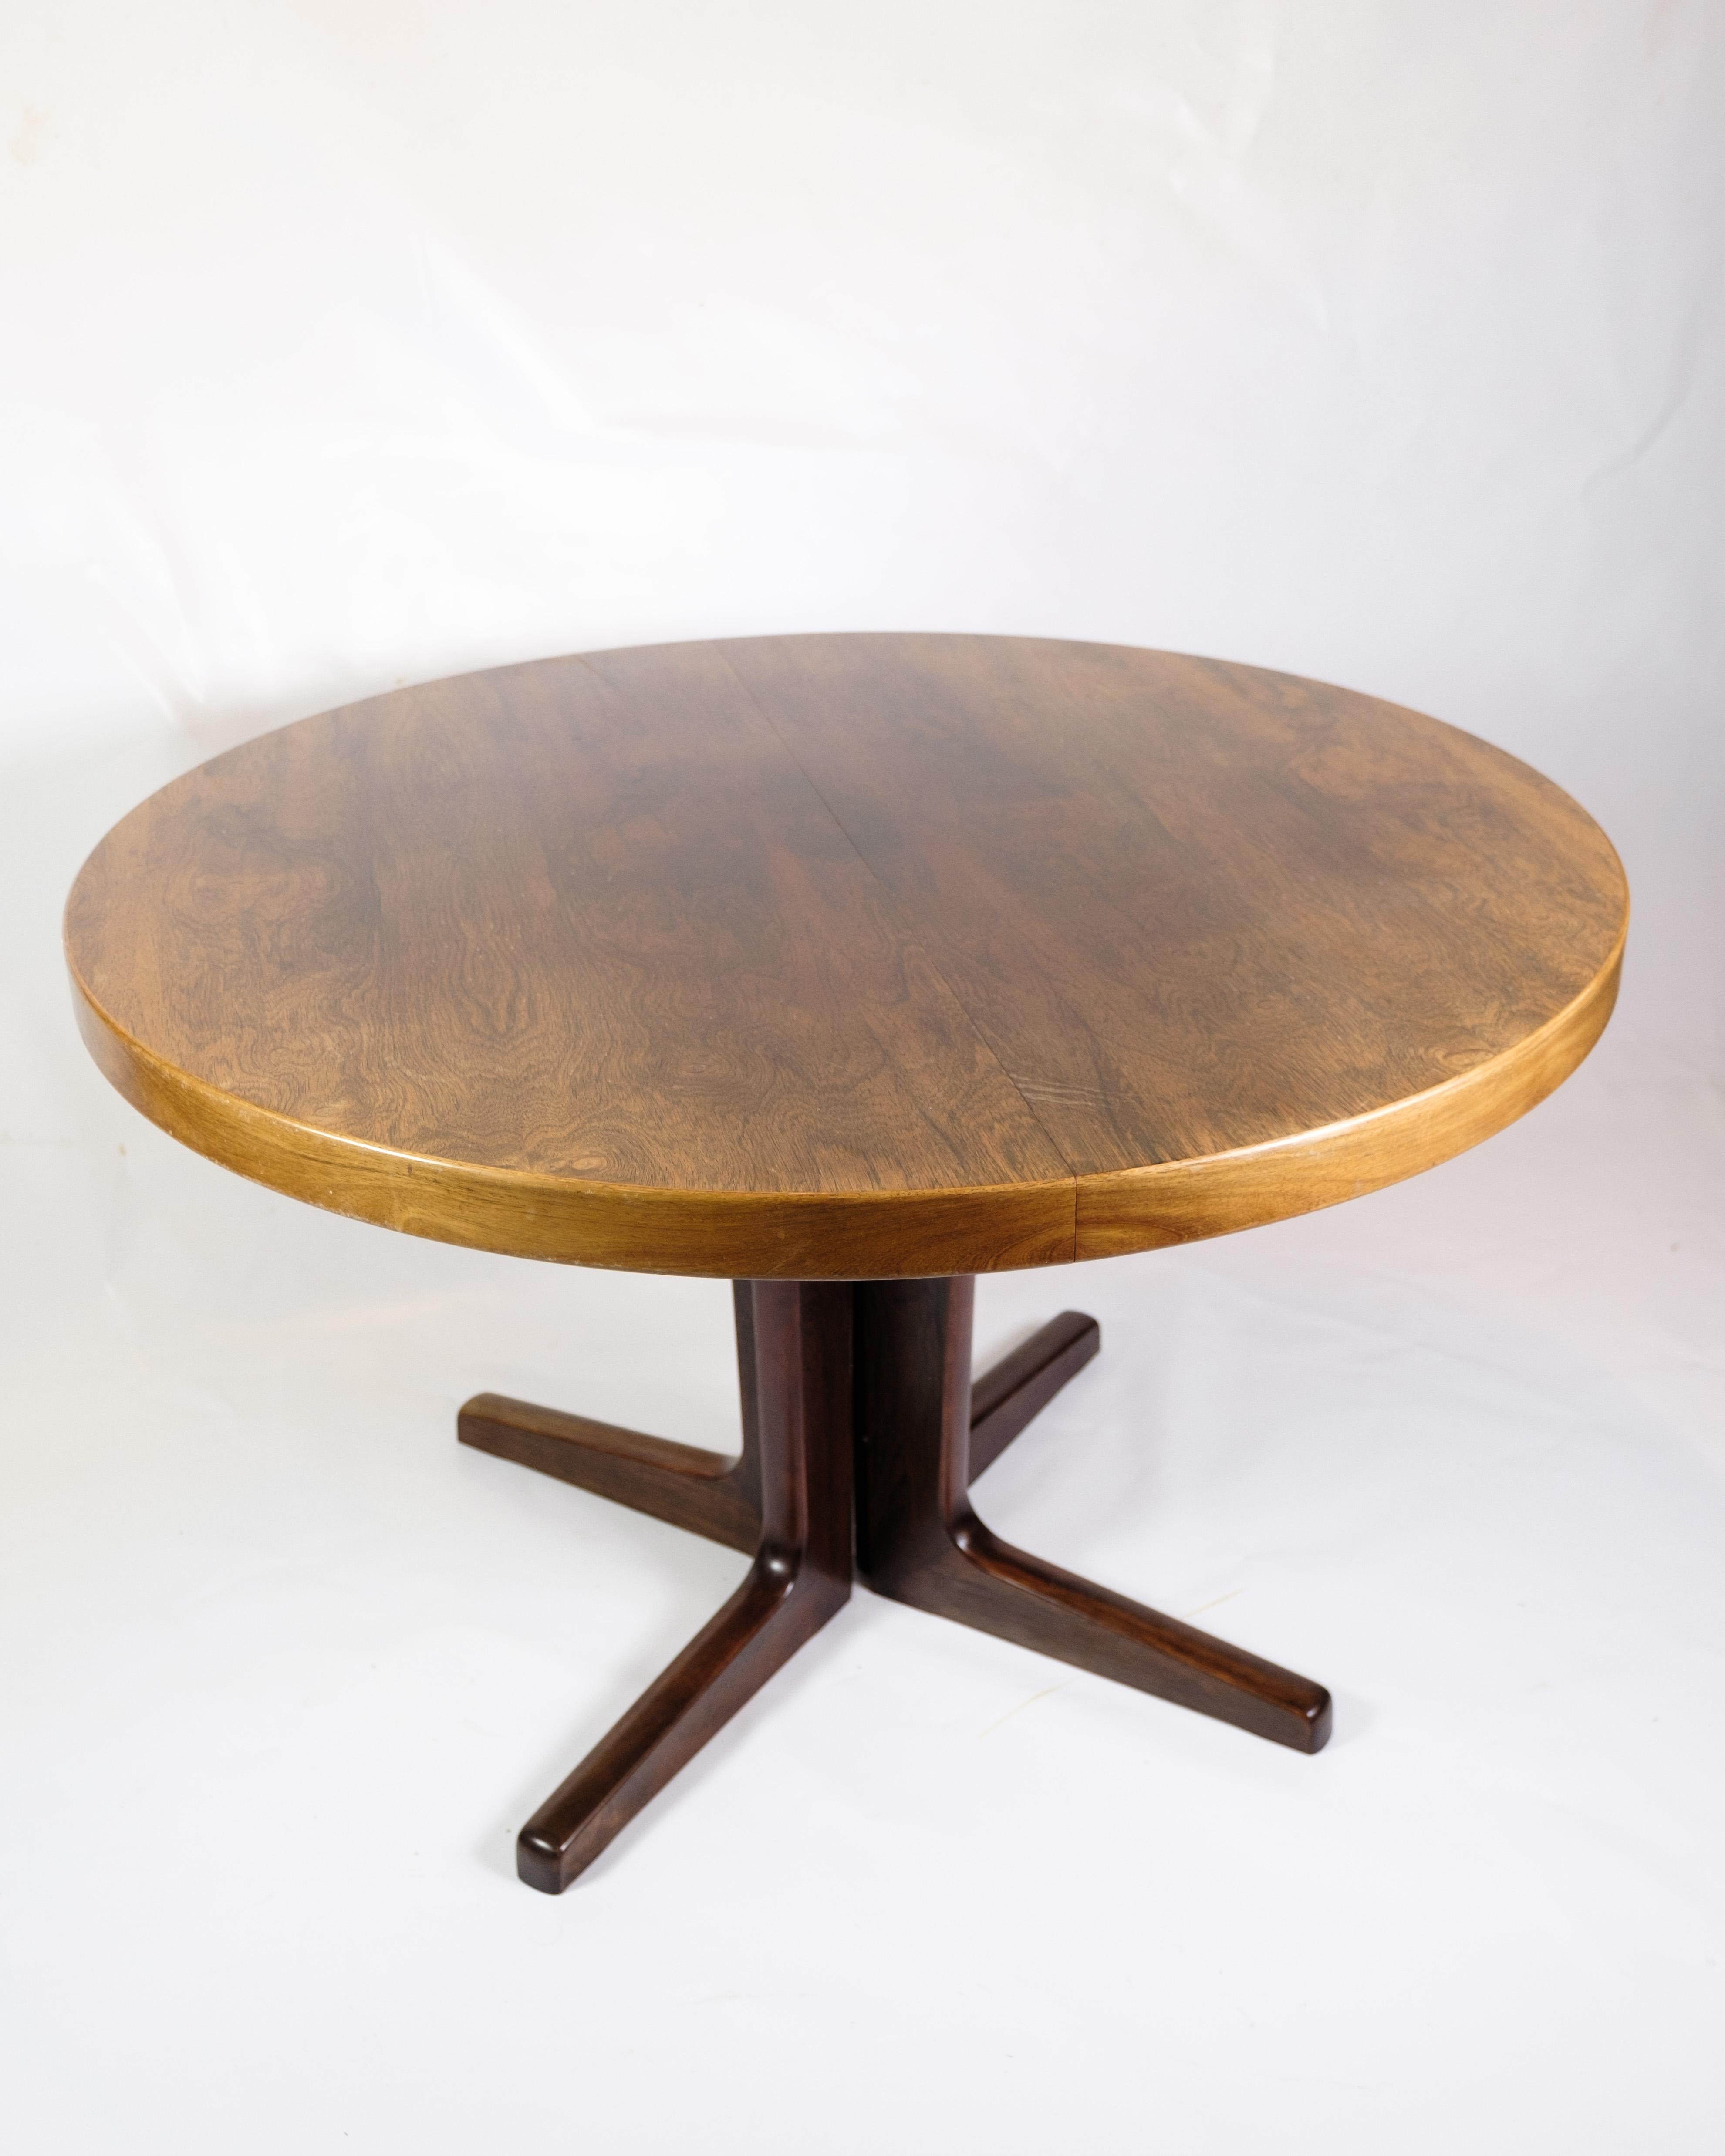 *LE PRIX COMPREND LA REMISE À NEUF COMPLÈTE DE L'ENSEMBLE DE L'ARTICLE.

Cette table de salle à manger ronde en bois de rose de 1960, produite par Skovby Møbelfabrik, est un splendide exemple de l'art et de l'artisanat du mobilier danois du milieu